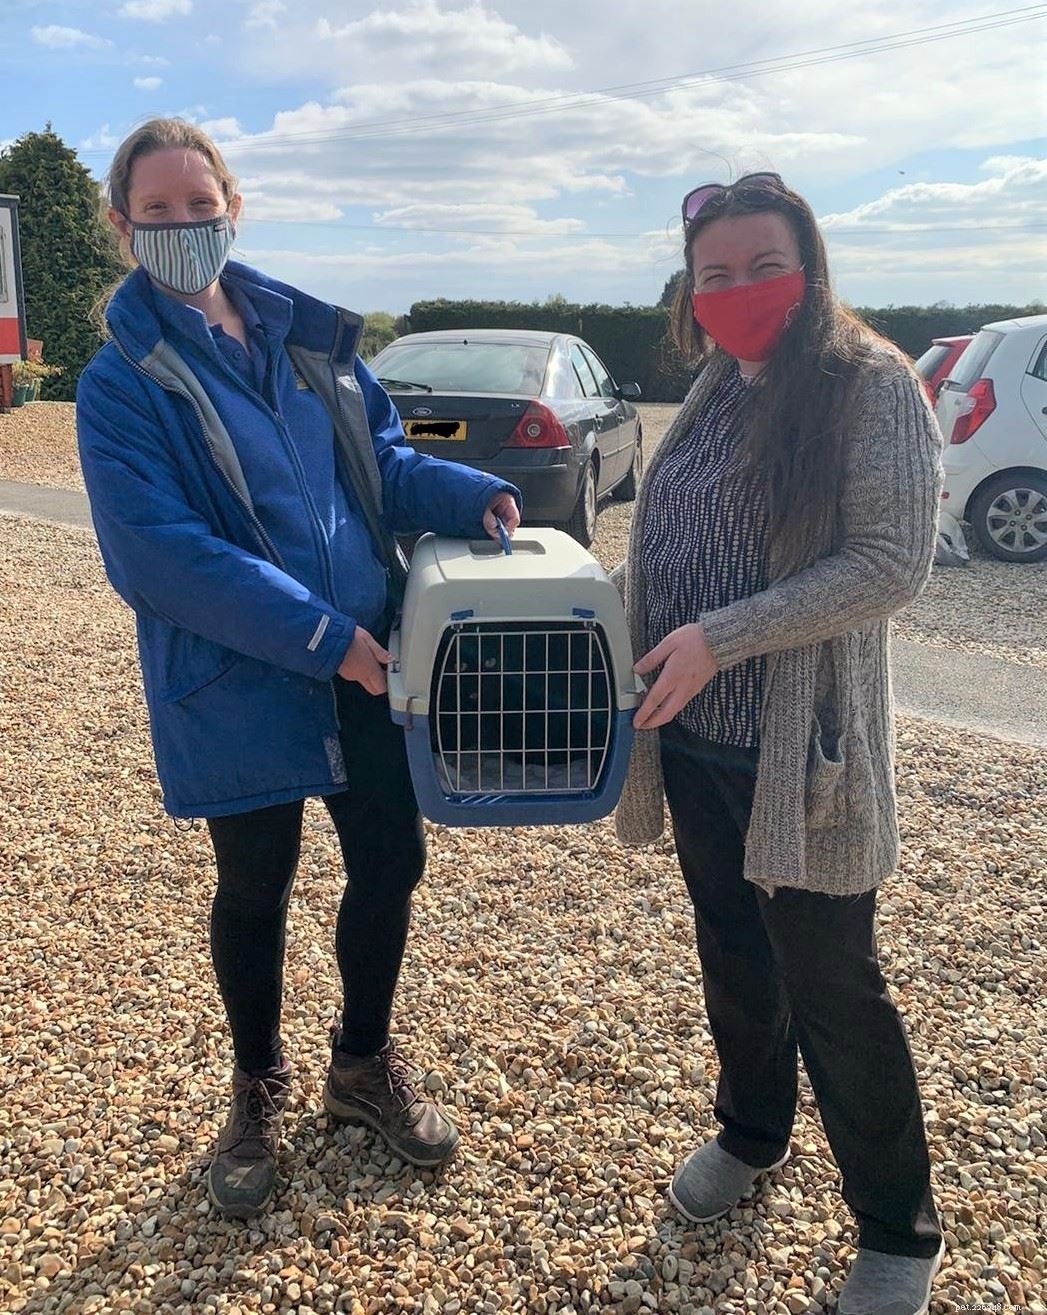 Gemma Barbieri était en larmes d incrédulité après avoir retrouvé son chat Rose grâce à Cats Protection scannant sa puce électronique 